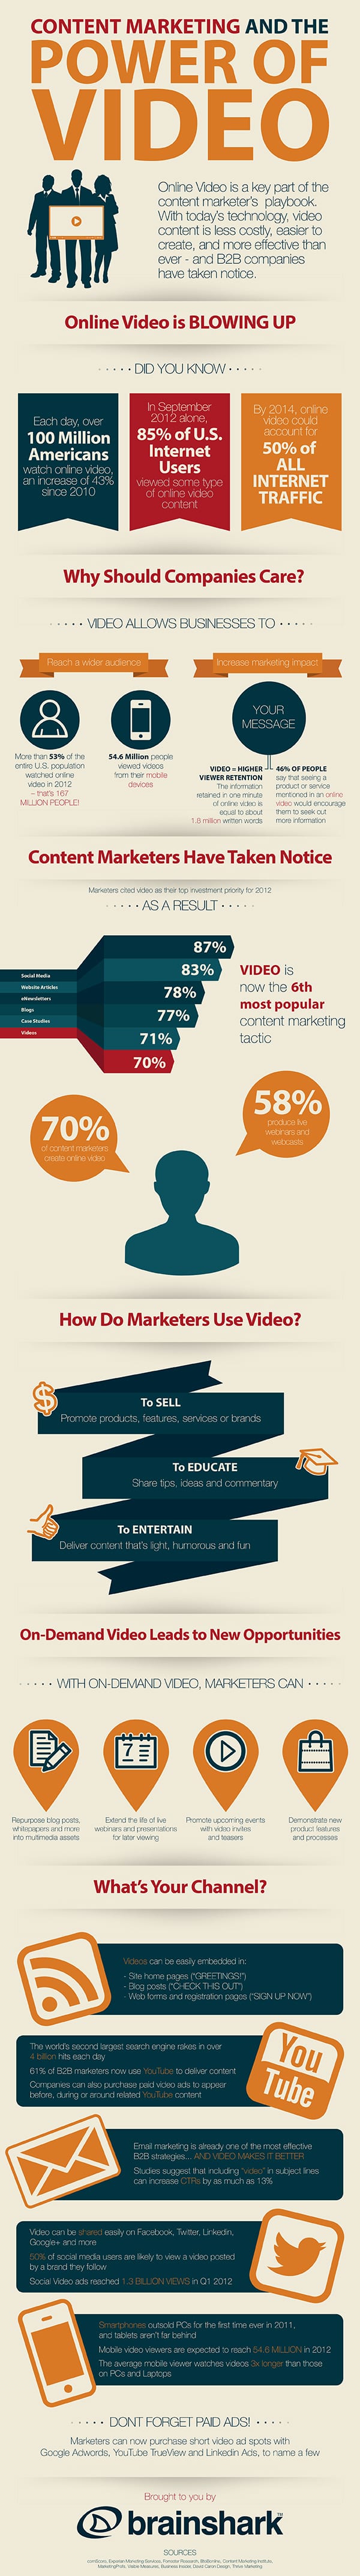 De kracht van online video voor je contentstrategie [infographic]